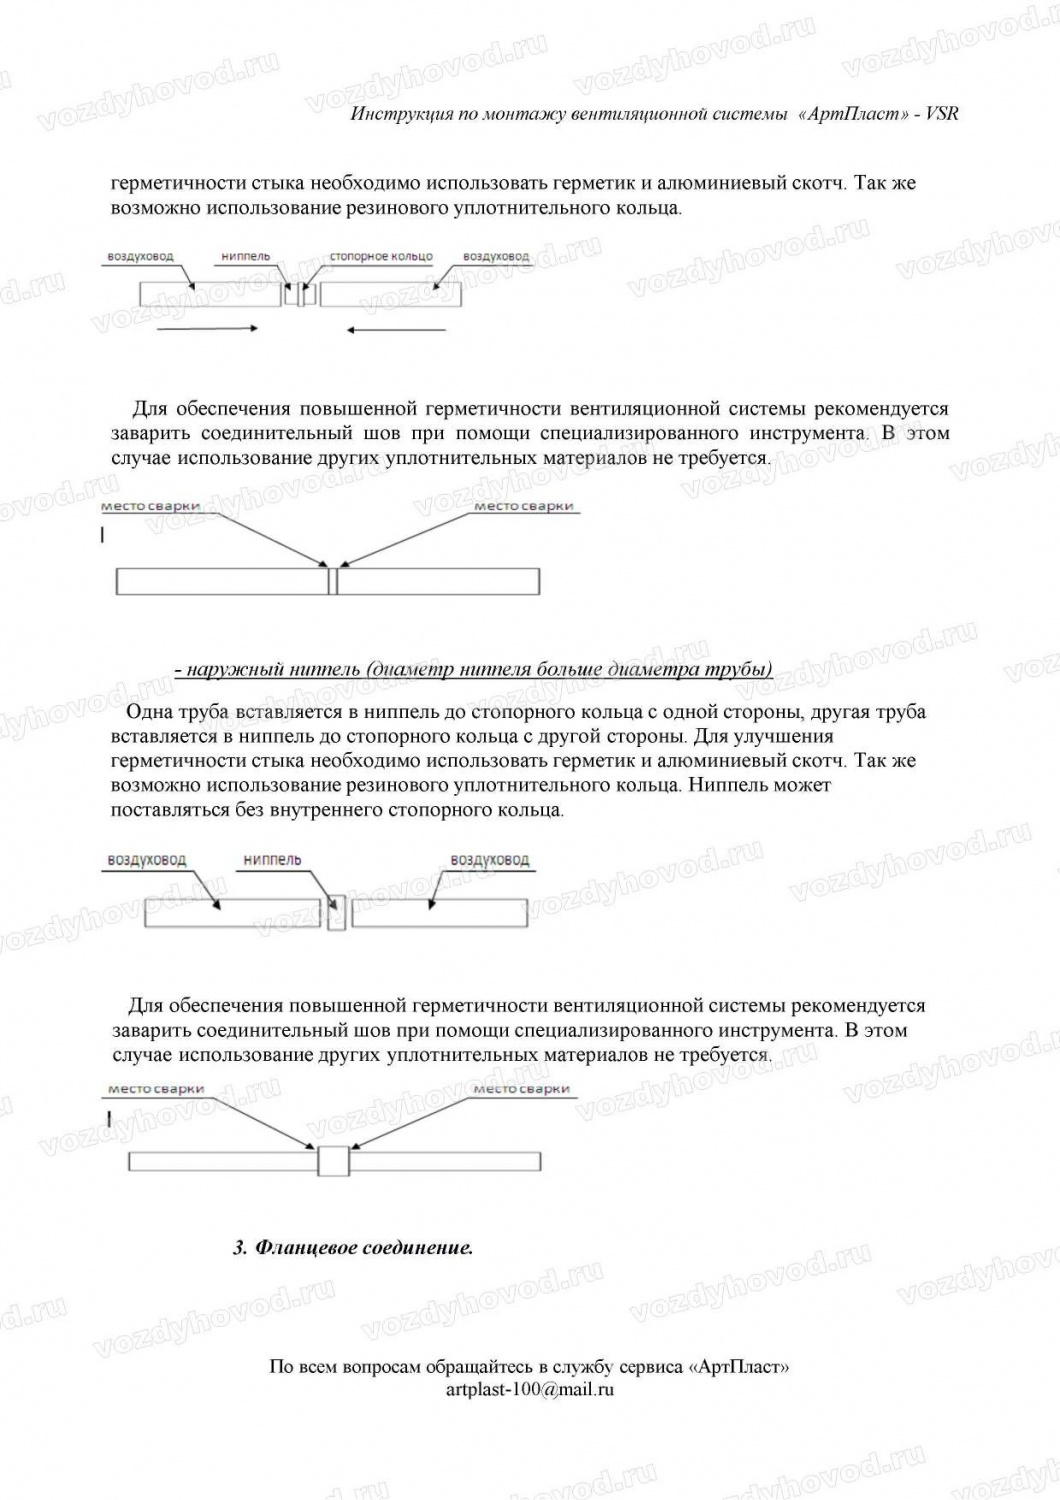 Инструкция по сварке воздуховодов из полипропилена страница 2